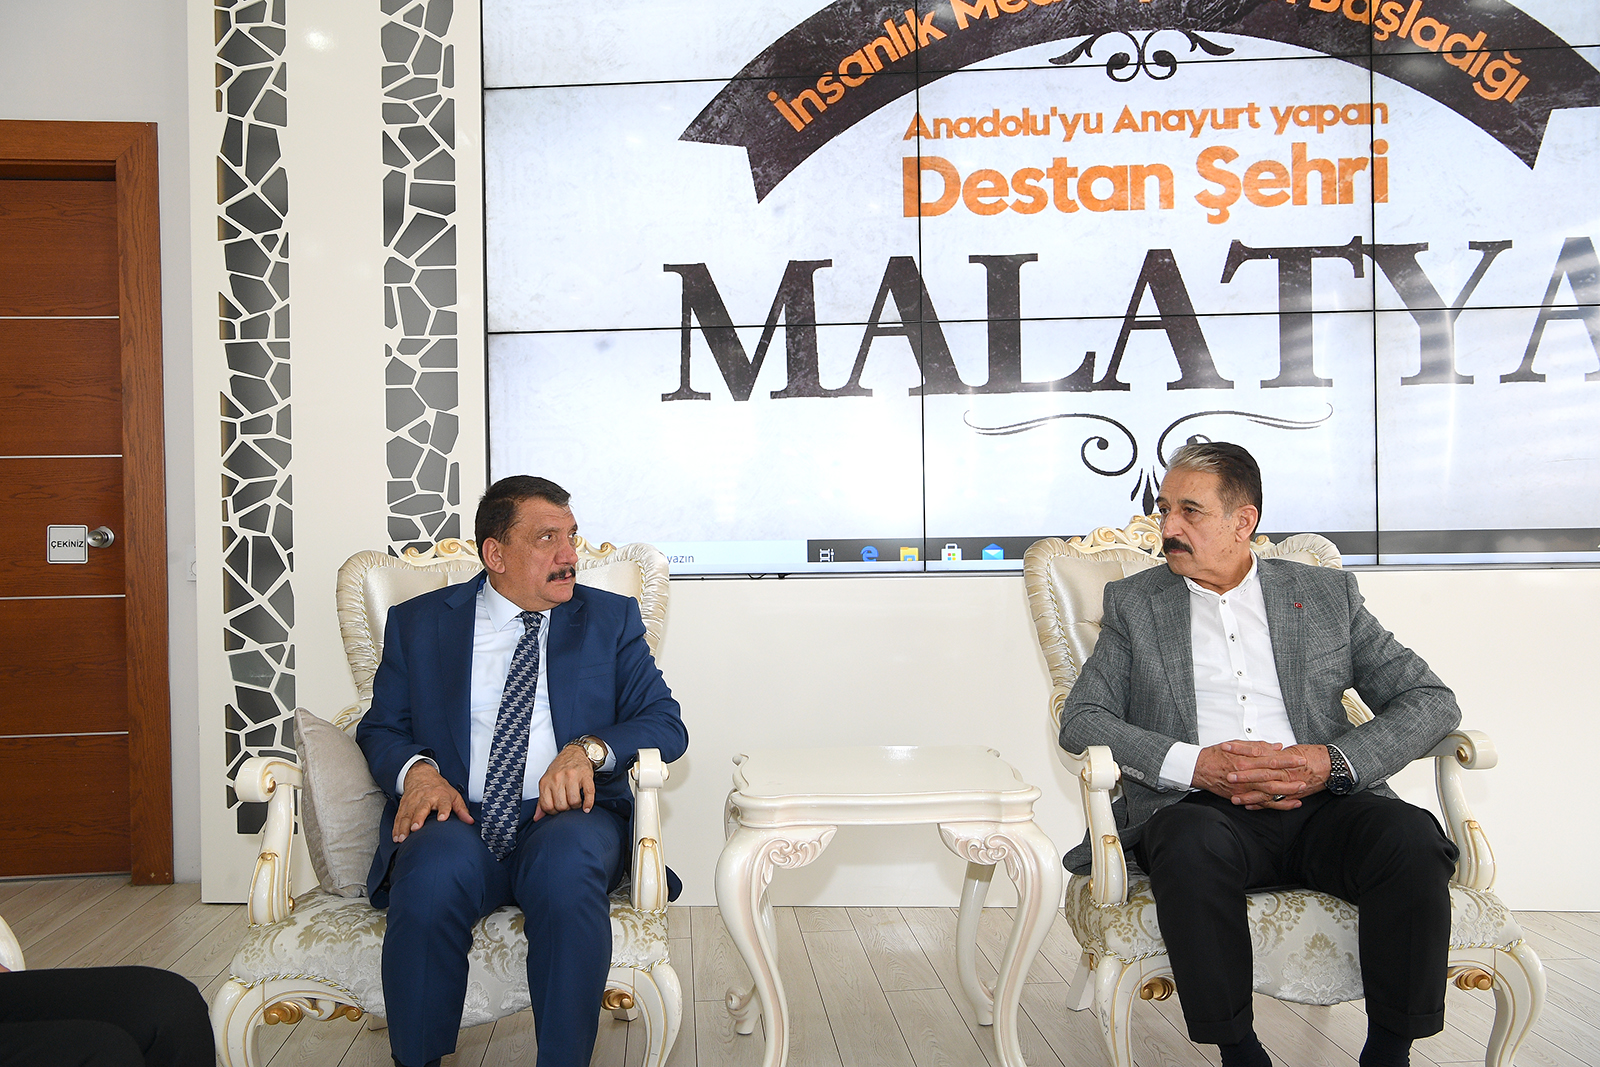 Malatya Büyükşehir Belediye Başkanı Selahattin Gürkan Esnaf Sanatkârlar Odaları Birliği (ESOB) Başkanı Şevket Keskin’i makamında kabul ederek bir süre görüştü. Başkan Gürkan, Büyükşehir Belediyesi olarak her zaman esnafların yanında olduklarını ifade etti